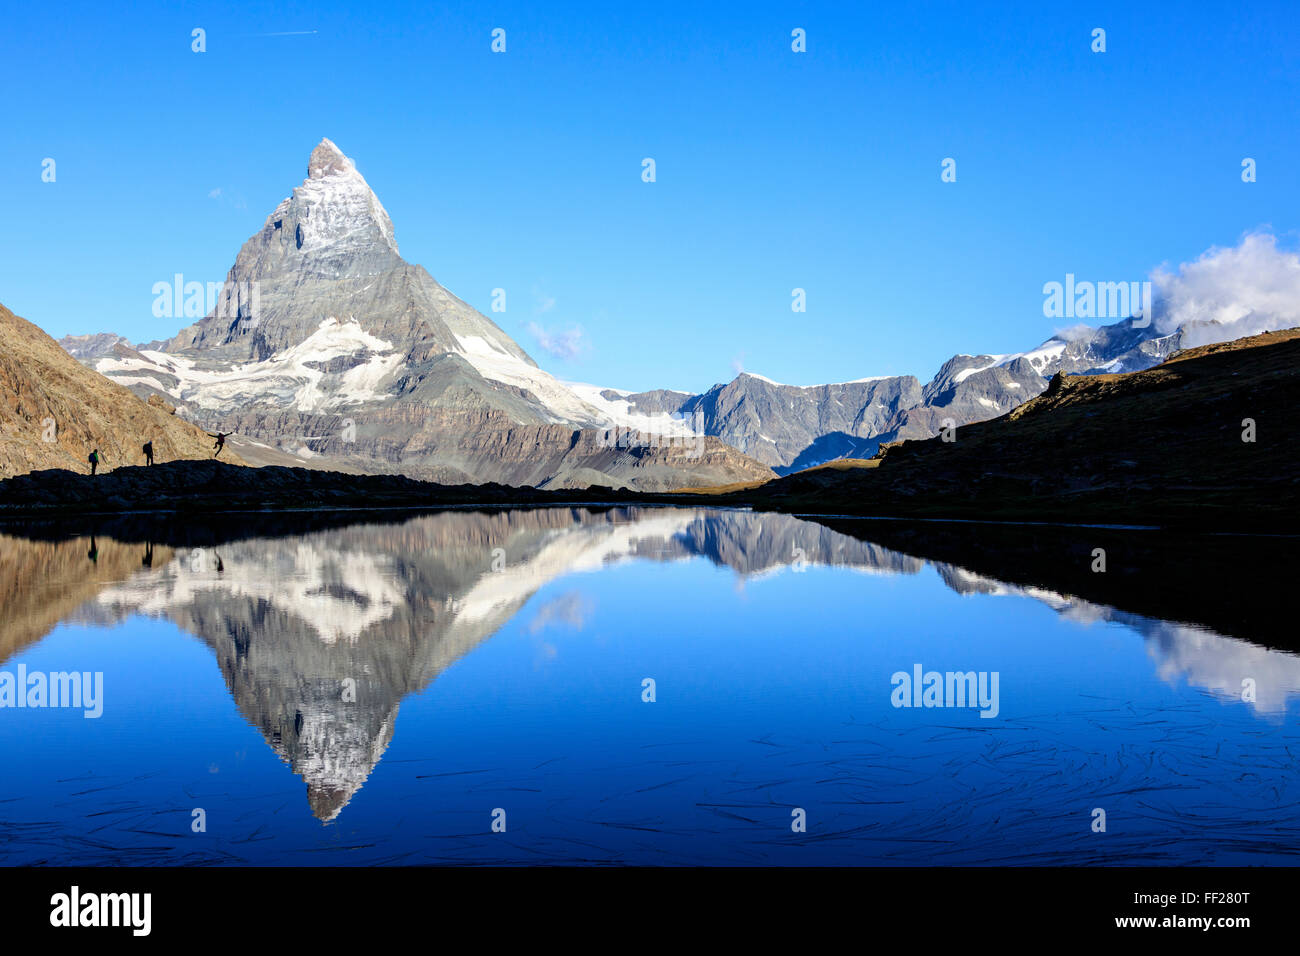 Gli escursionisti ammirando il Cervino riflesso nel lago Stellisee, Zermatt, Canton Vallese, Pennine, alpi svizzere, Svizzera Foto Stock